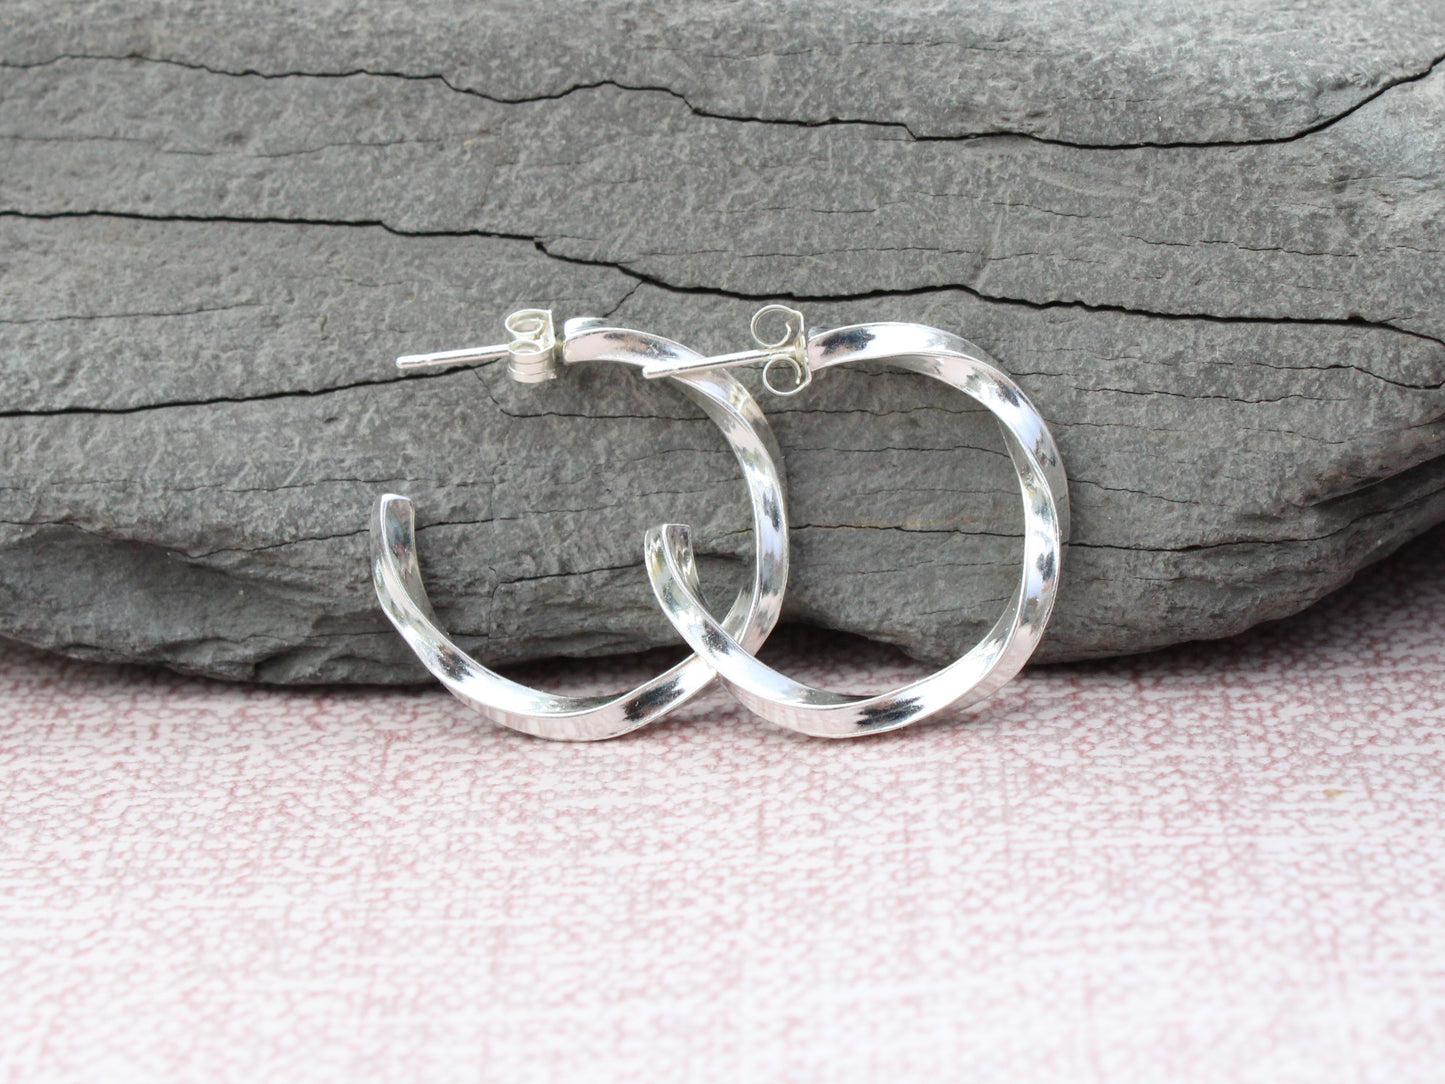 Handmade sterling silver twisted hoop earrings.